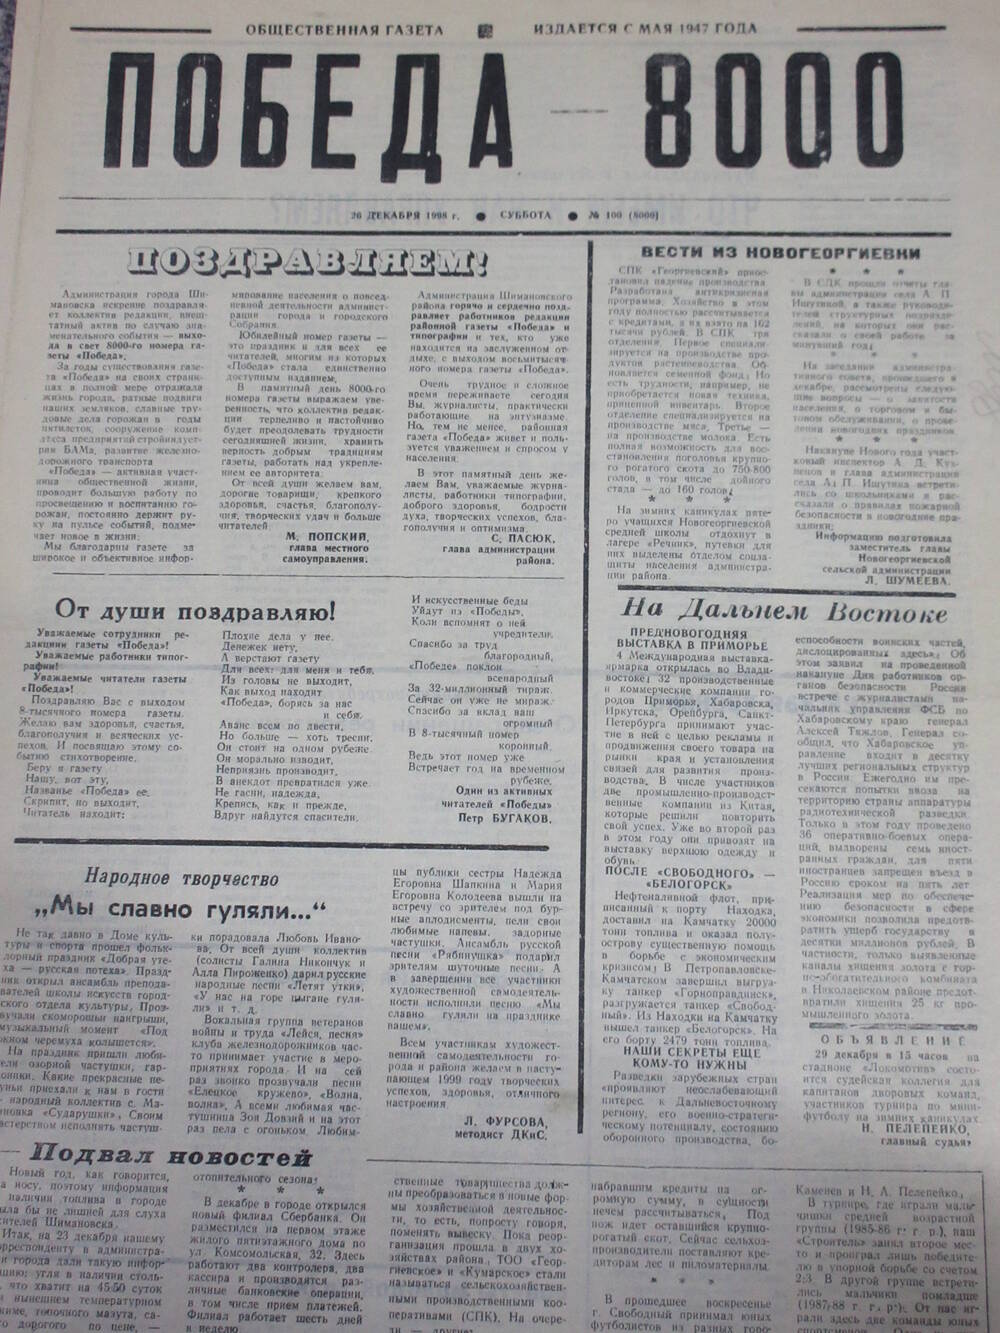 Газета Победа города Шимановска - вышедший в свет 8000 номер газеты